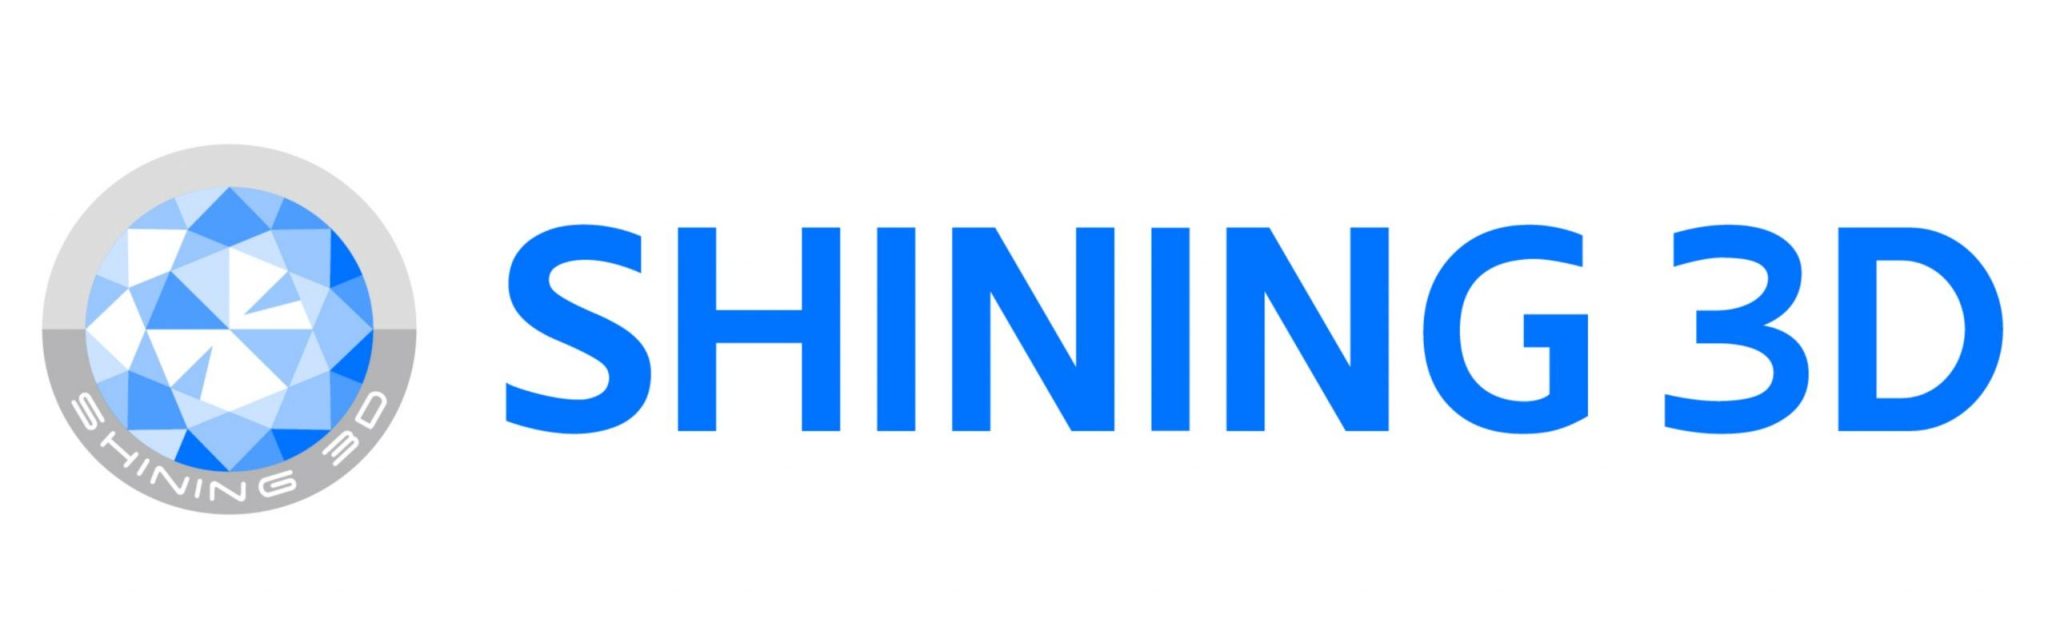 shining3D logo